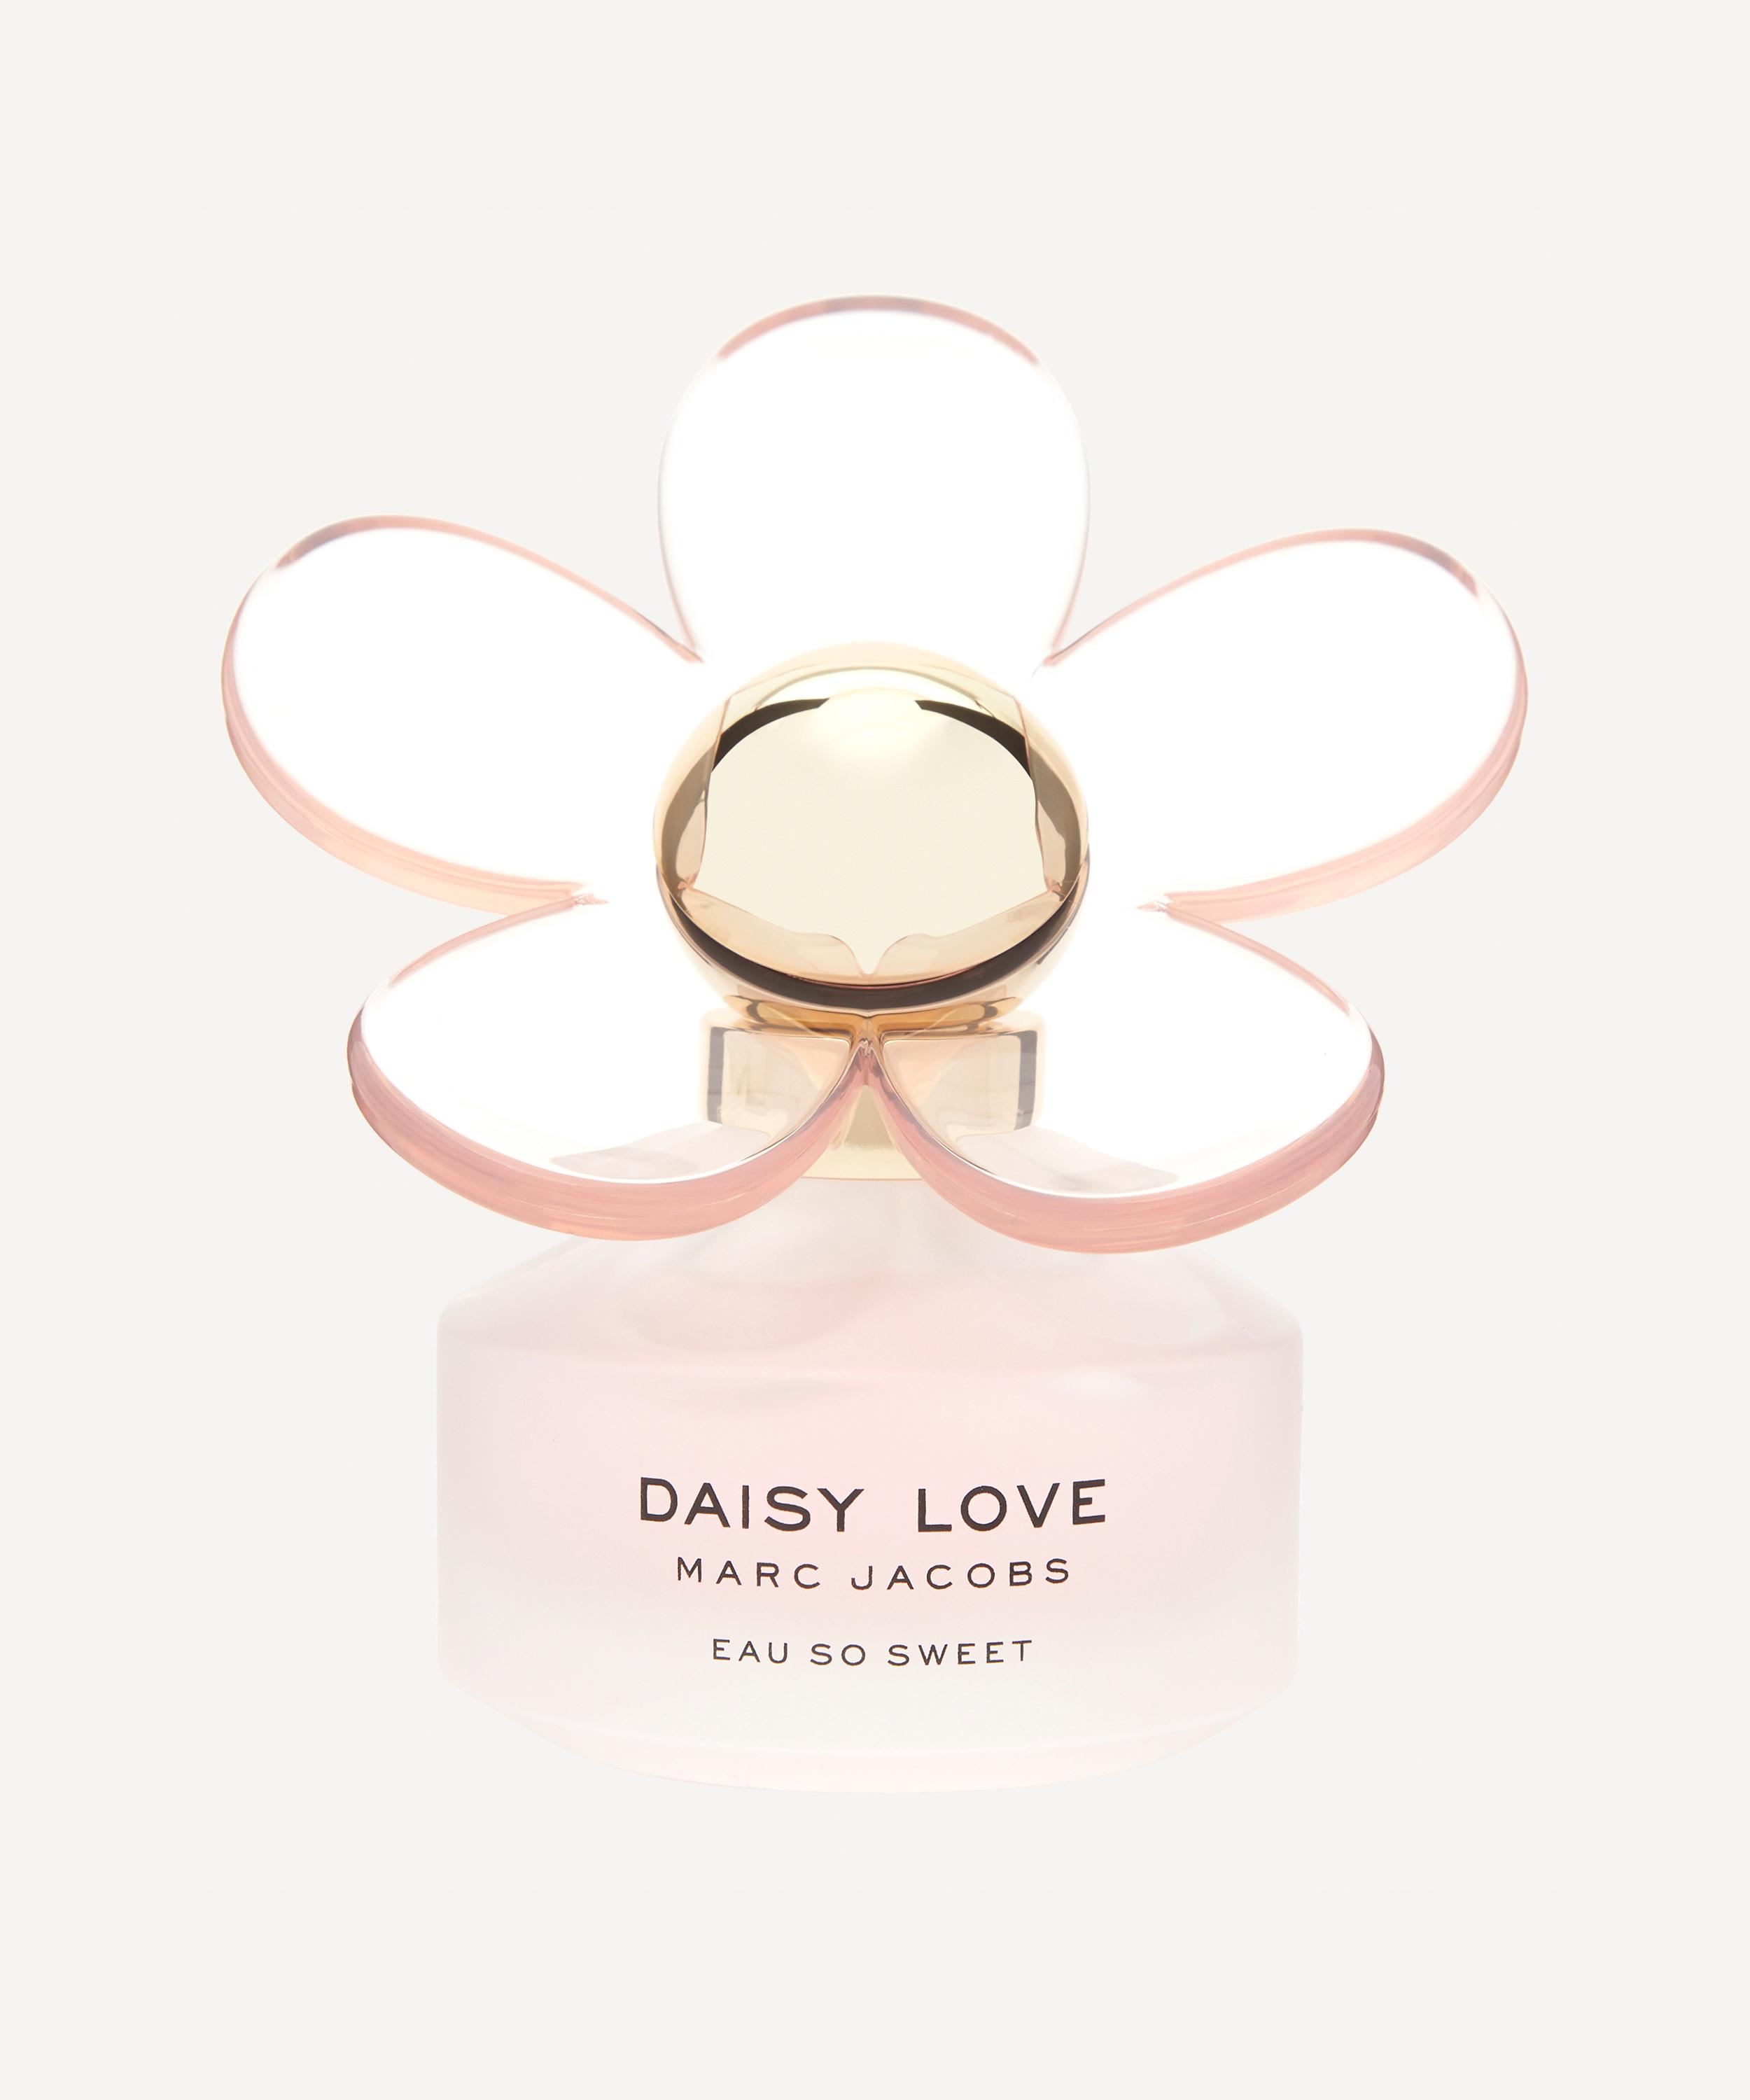 Marc Jacobs Daisy Love Paradise Limited Edition Eau de Toilette